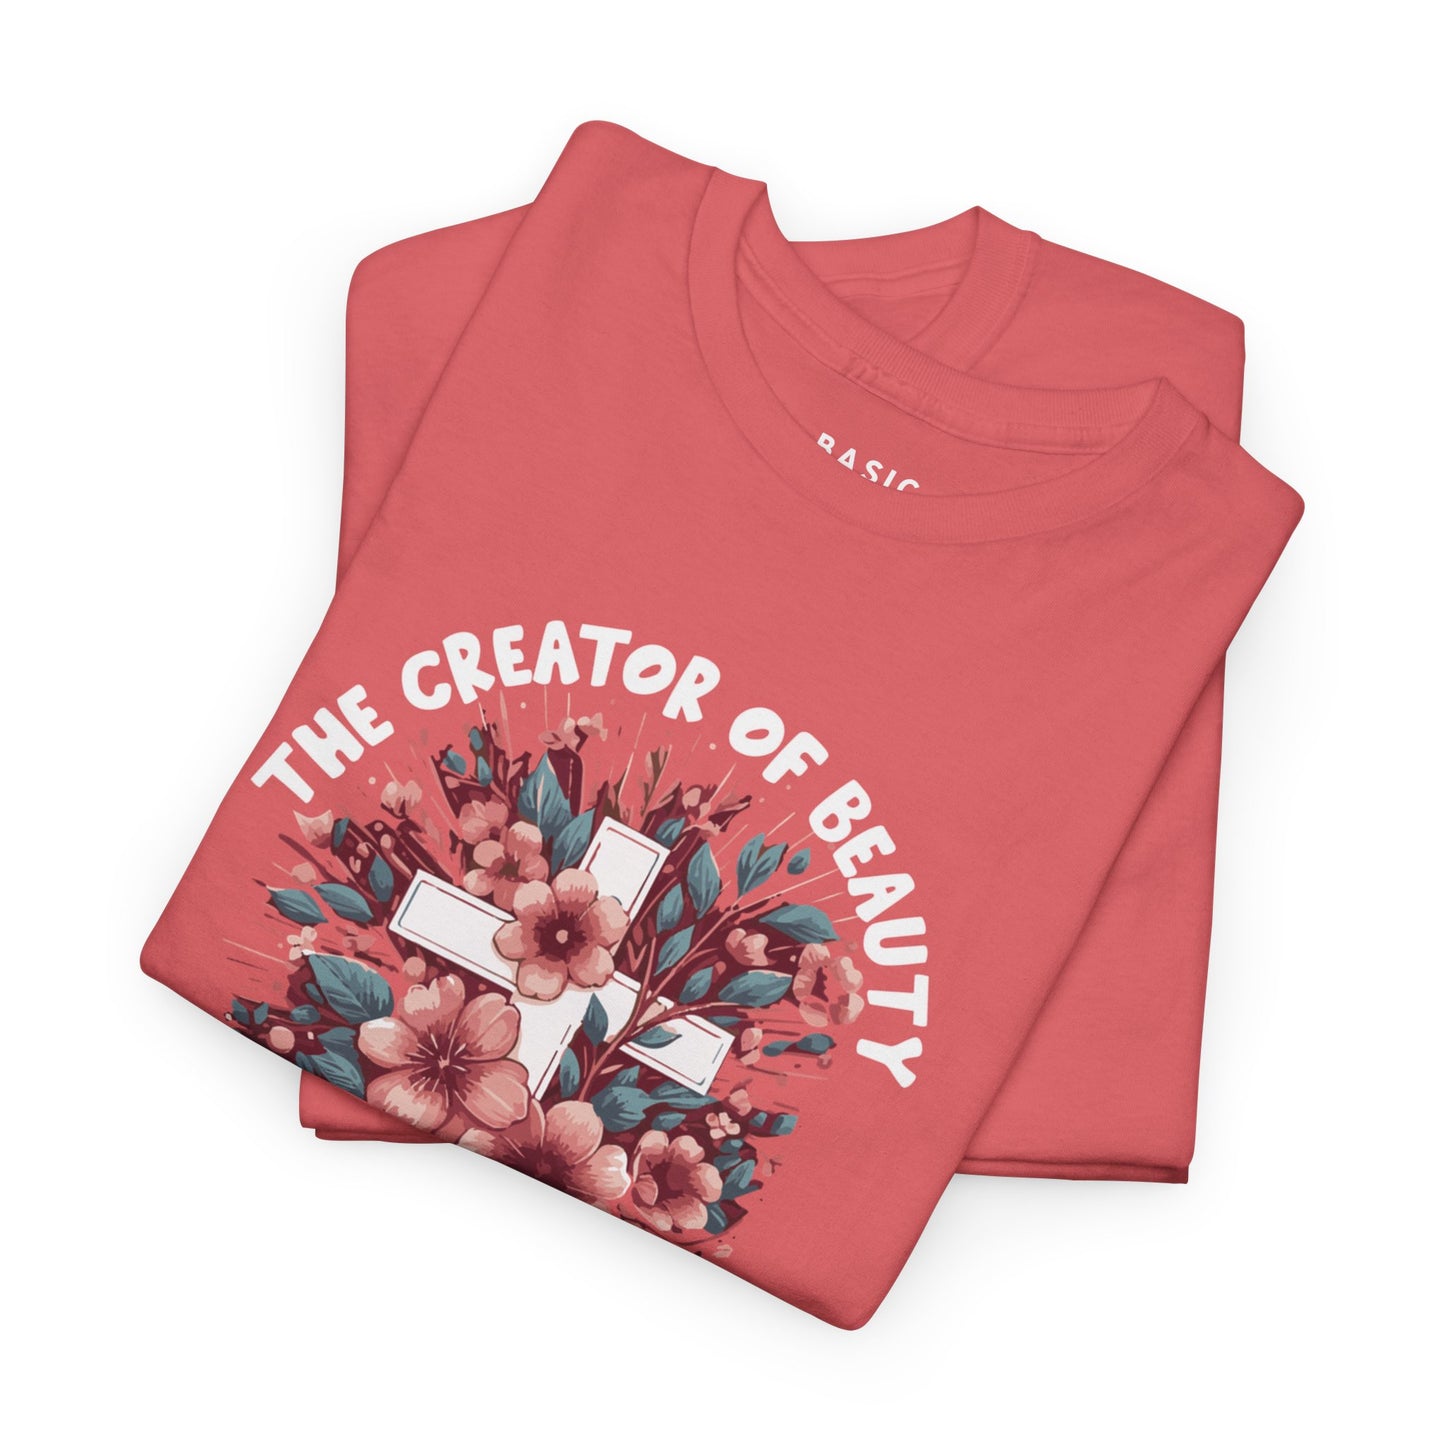 Women's B.A.S.I.C "Creator of Beauty" T Shirt